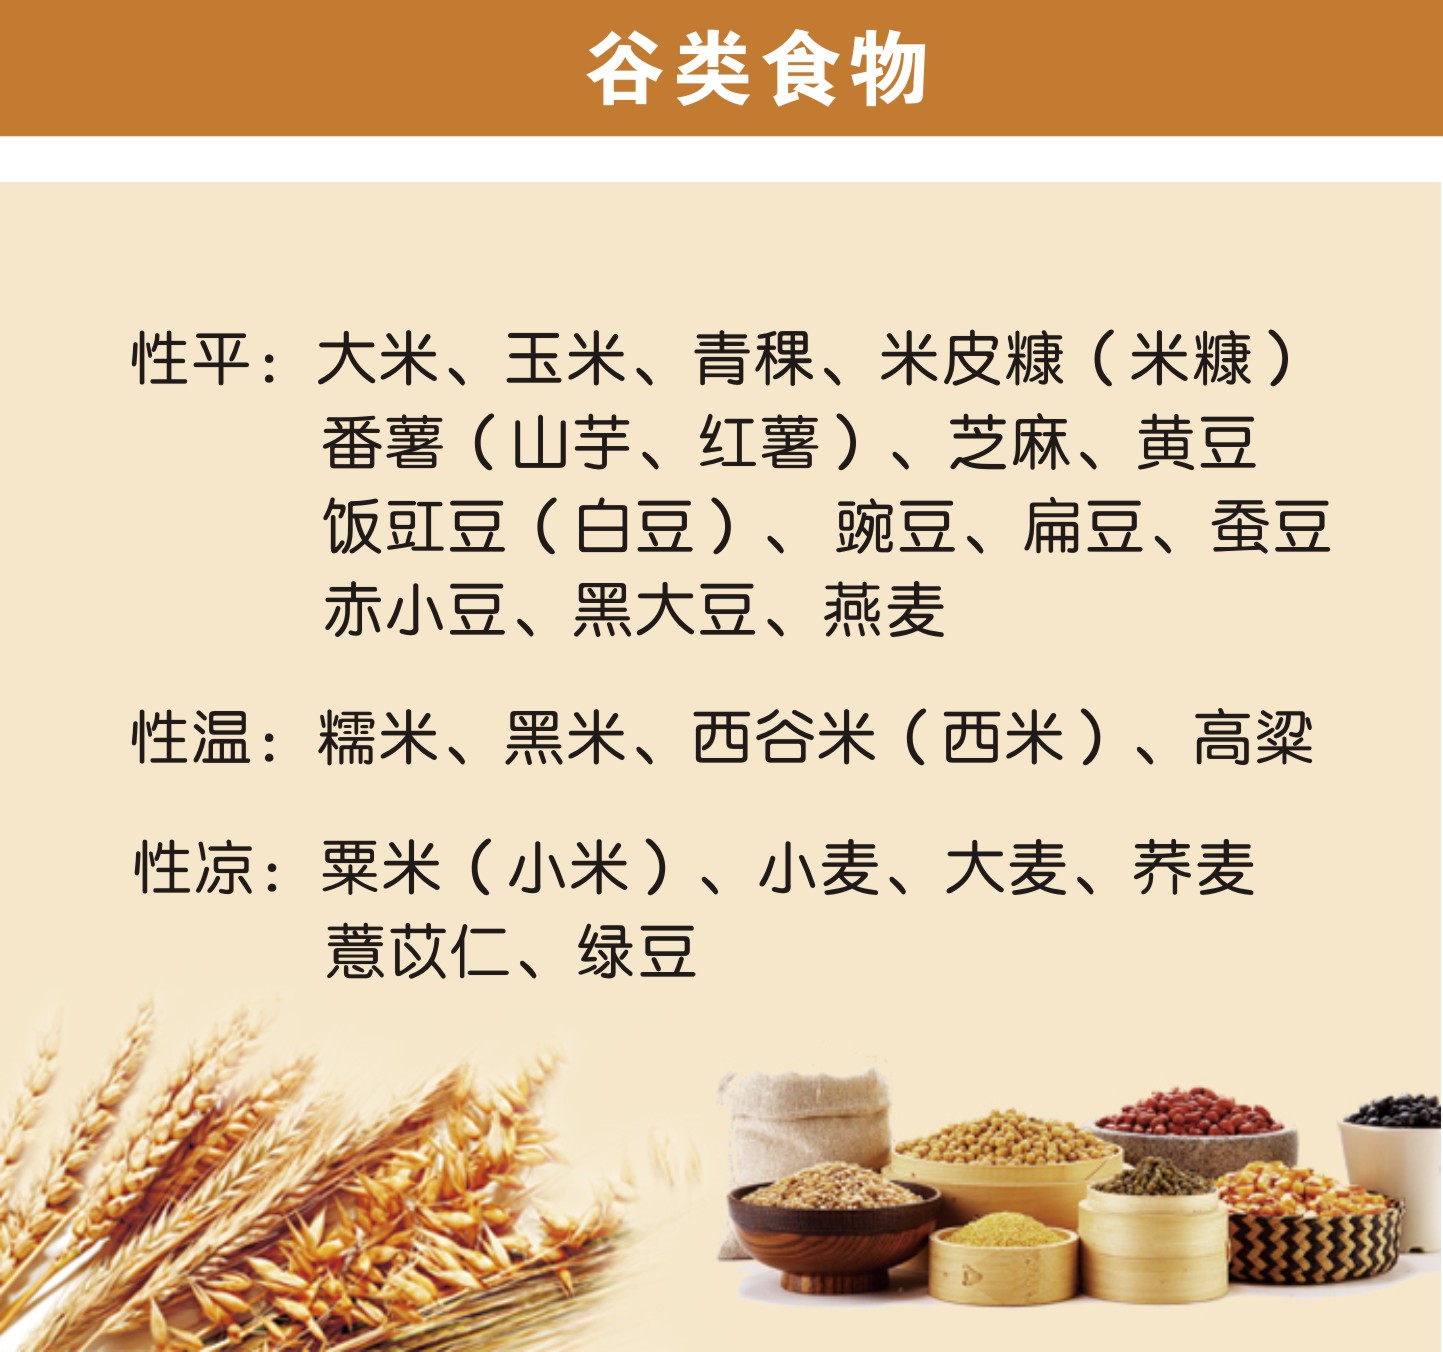 谷类食物:  性平:大米,玉米,青稞,米皮糠(米糠)  番薯(山芋,红薯)